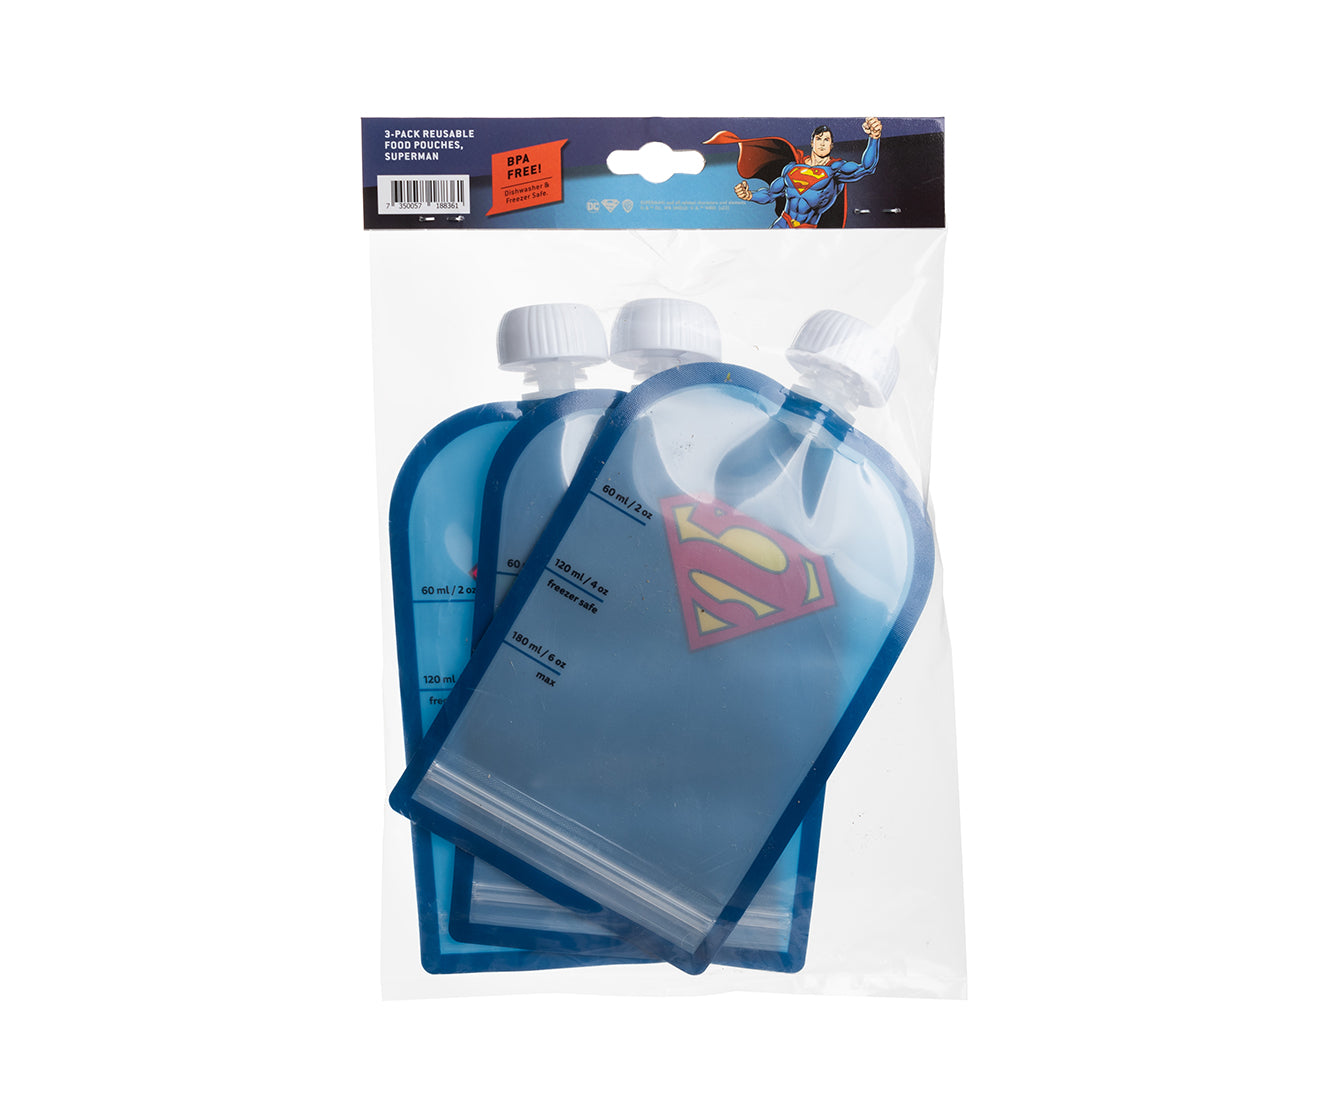 Quetschbeutel, Superman, 180 ml, 3er-Pack